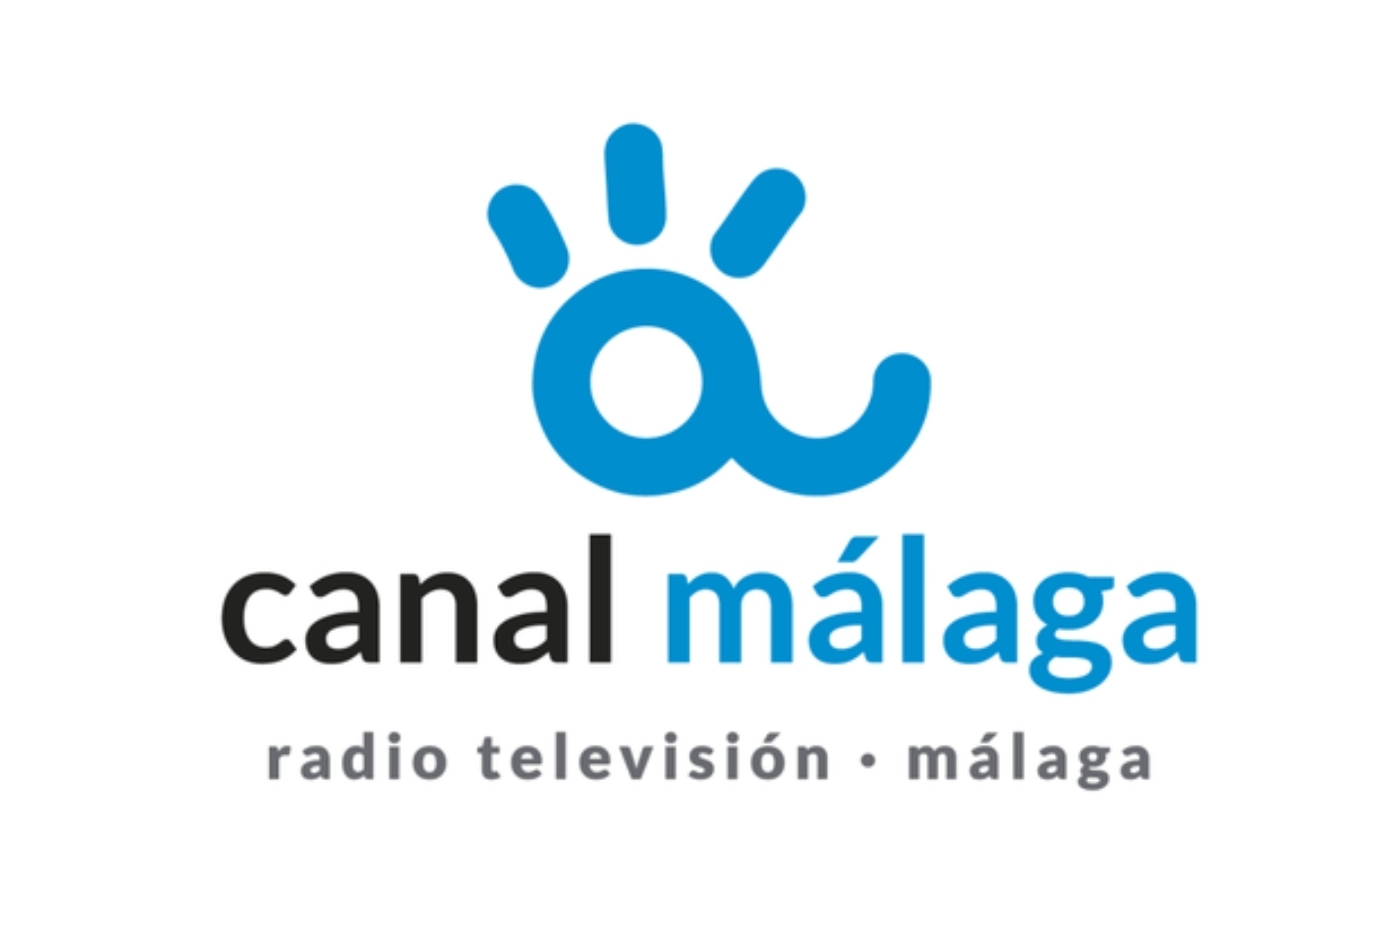 CANAL MÁLAGA RTV OFRECE MAÑANA EN DIRECTO EL PREGÓN DE LA SEMANA SANTA
 (Abre en ventana nueva)